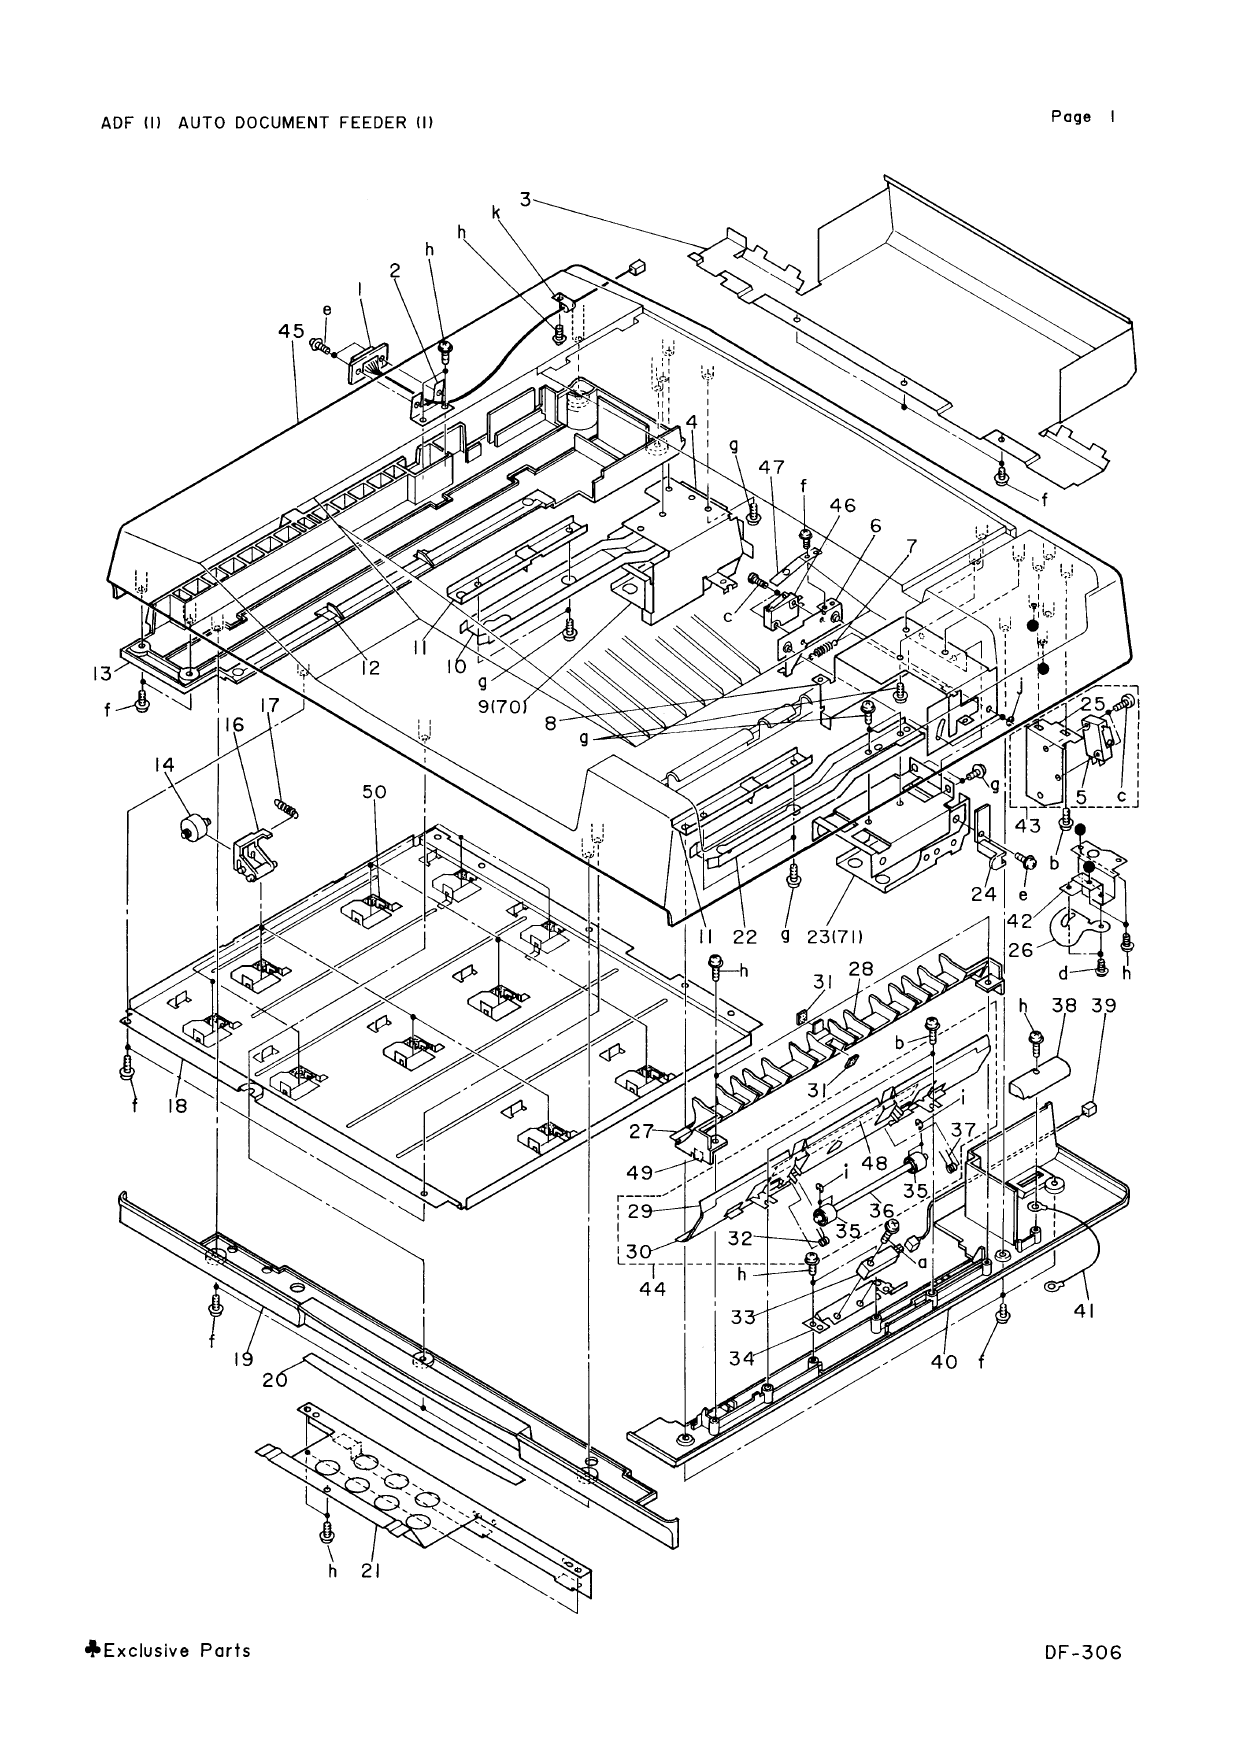 Konica-Minolta Options DF-306 Parts Manual-2